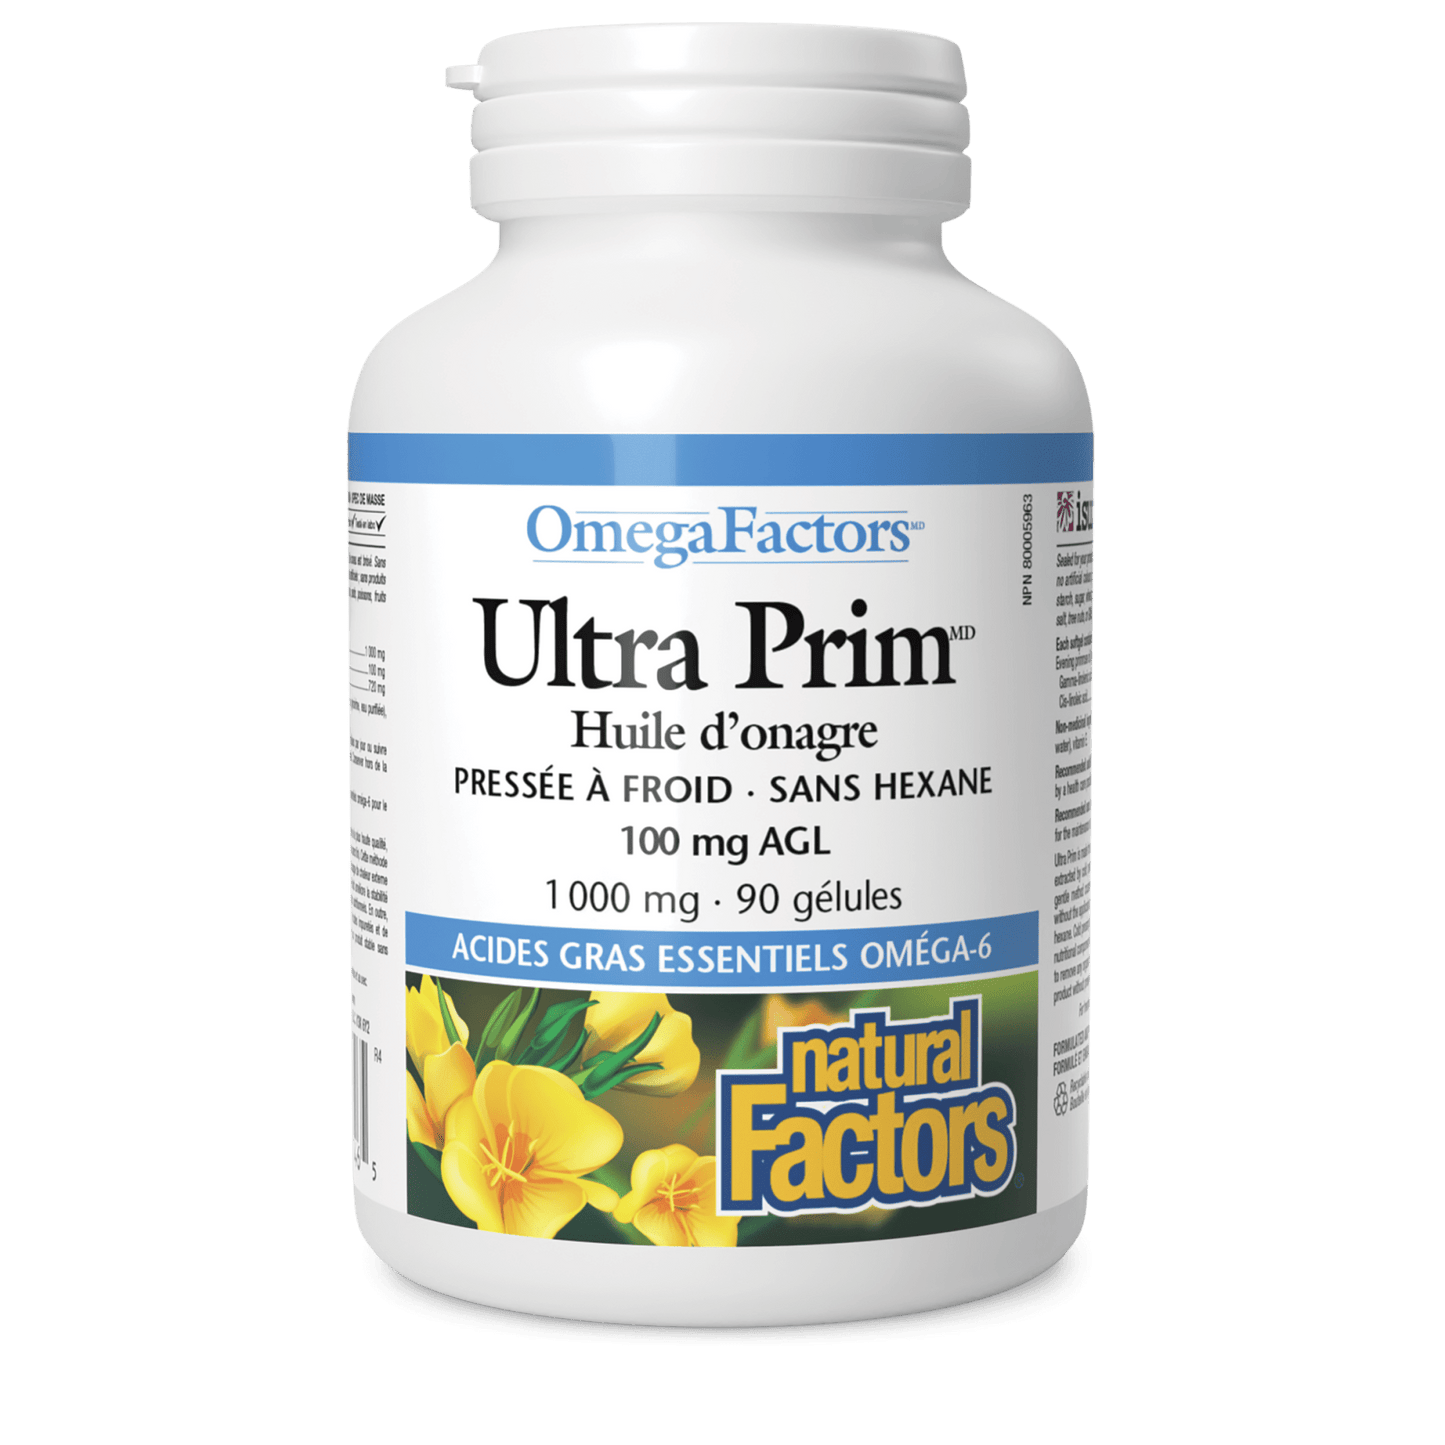 Ultra Prim Huile d’onagre 1 000 mg, OmegaFactors, Natural Factors|v|image|2346